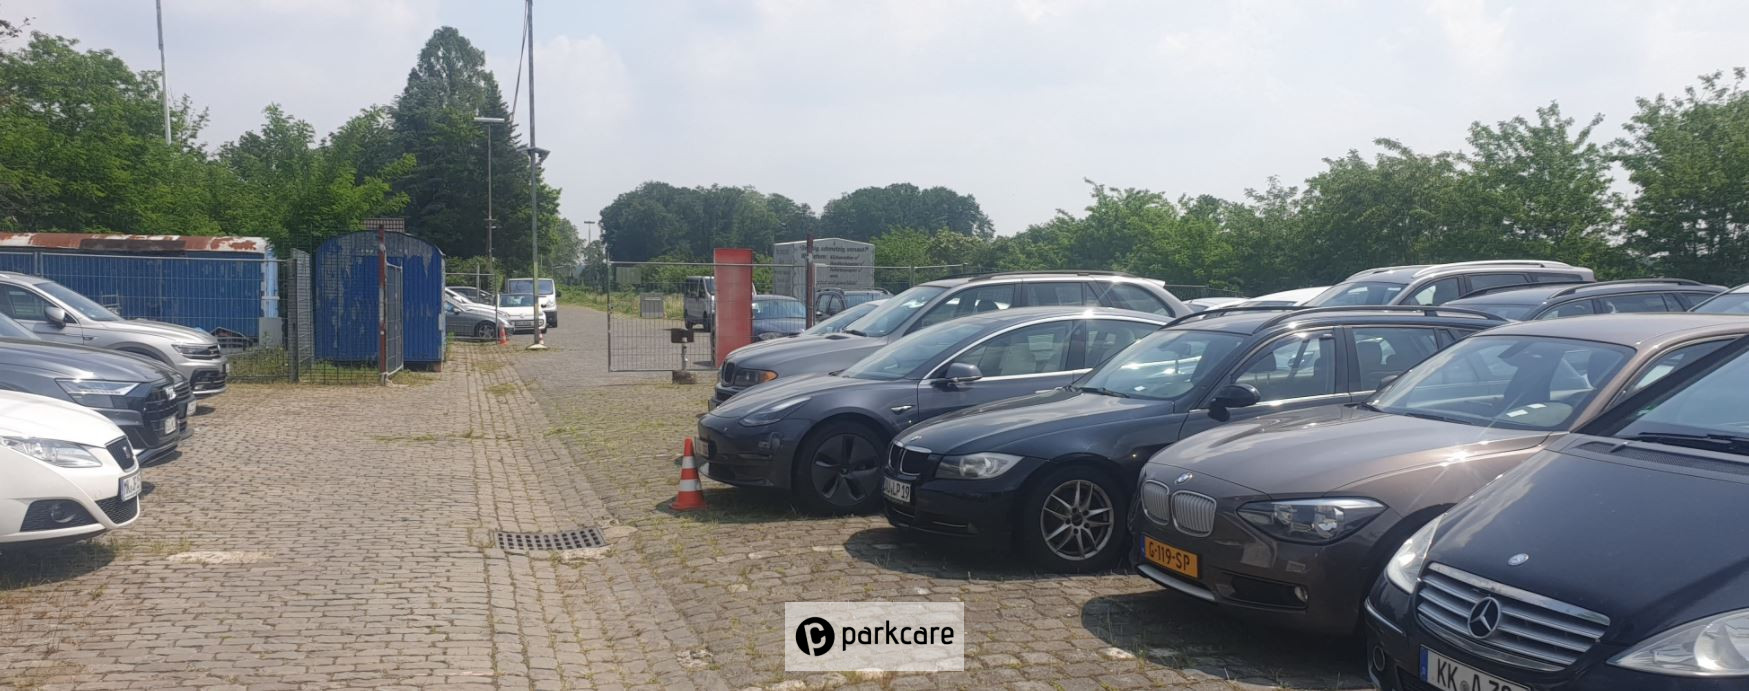 Parking Airea Keulen geparkeerde auto´s overzicht